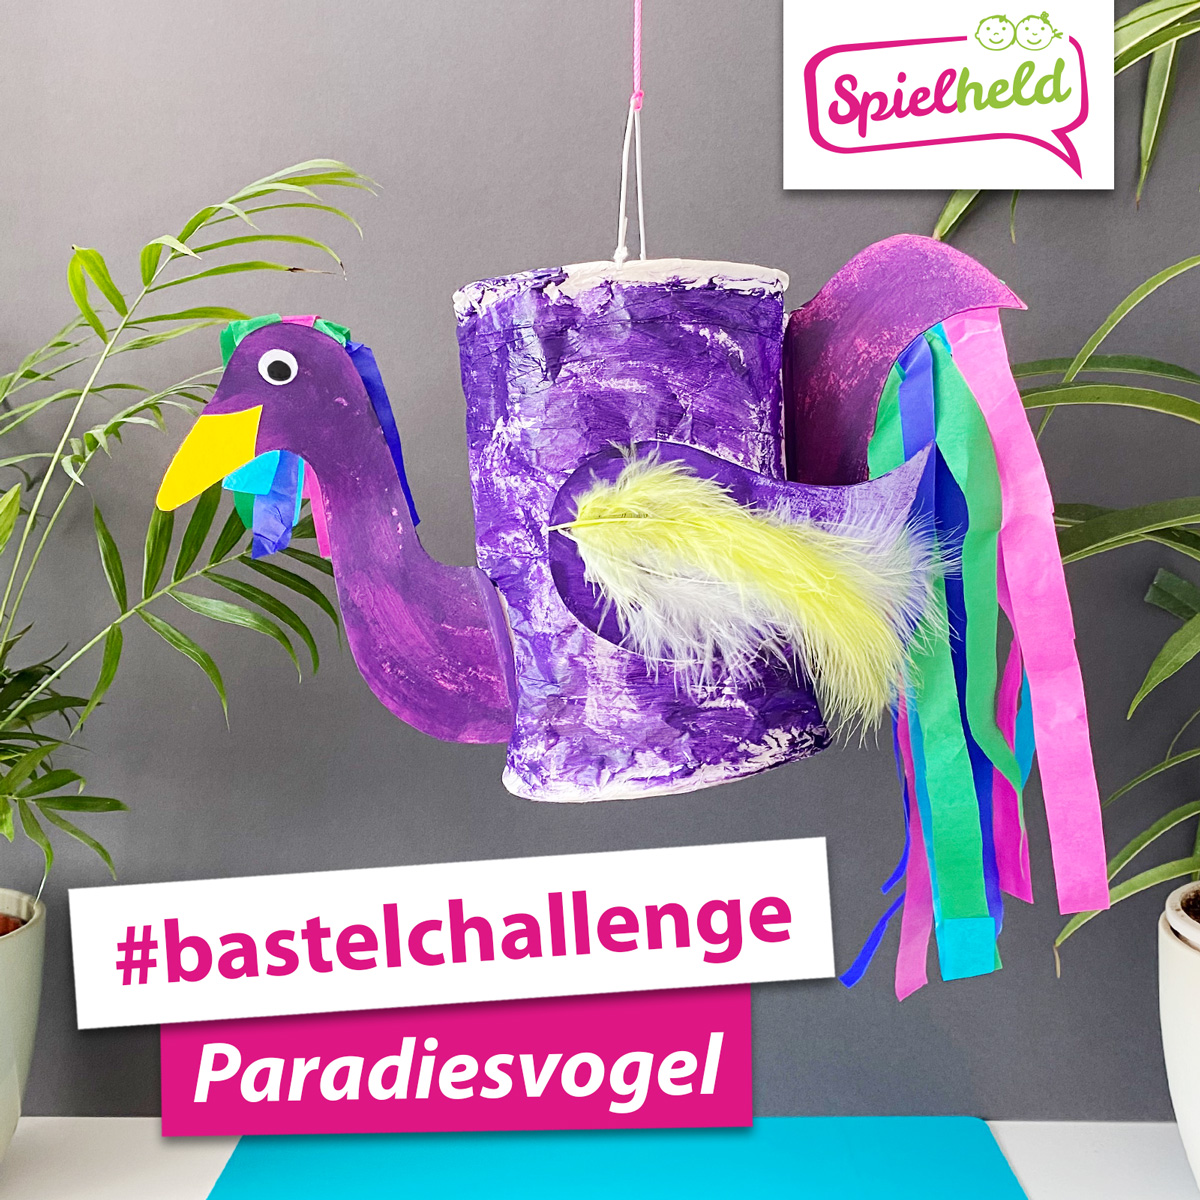 Paradiesvogel: Gestalte eine Papier-Laterne um und lasse einen farbenfrohen Paradiesvogel mit Fotokarton und Seidenpapierentstehen!